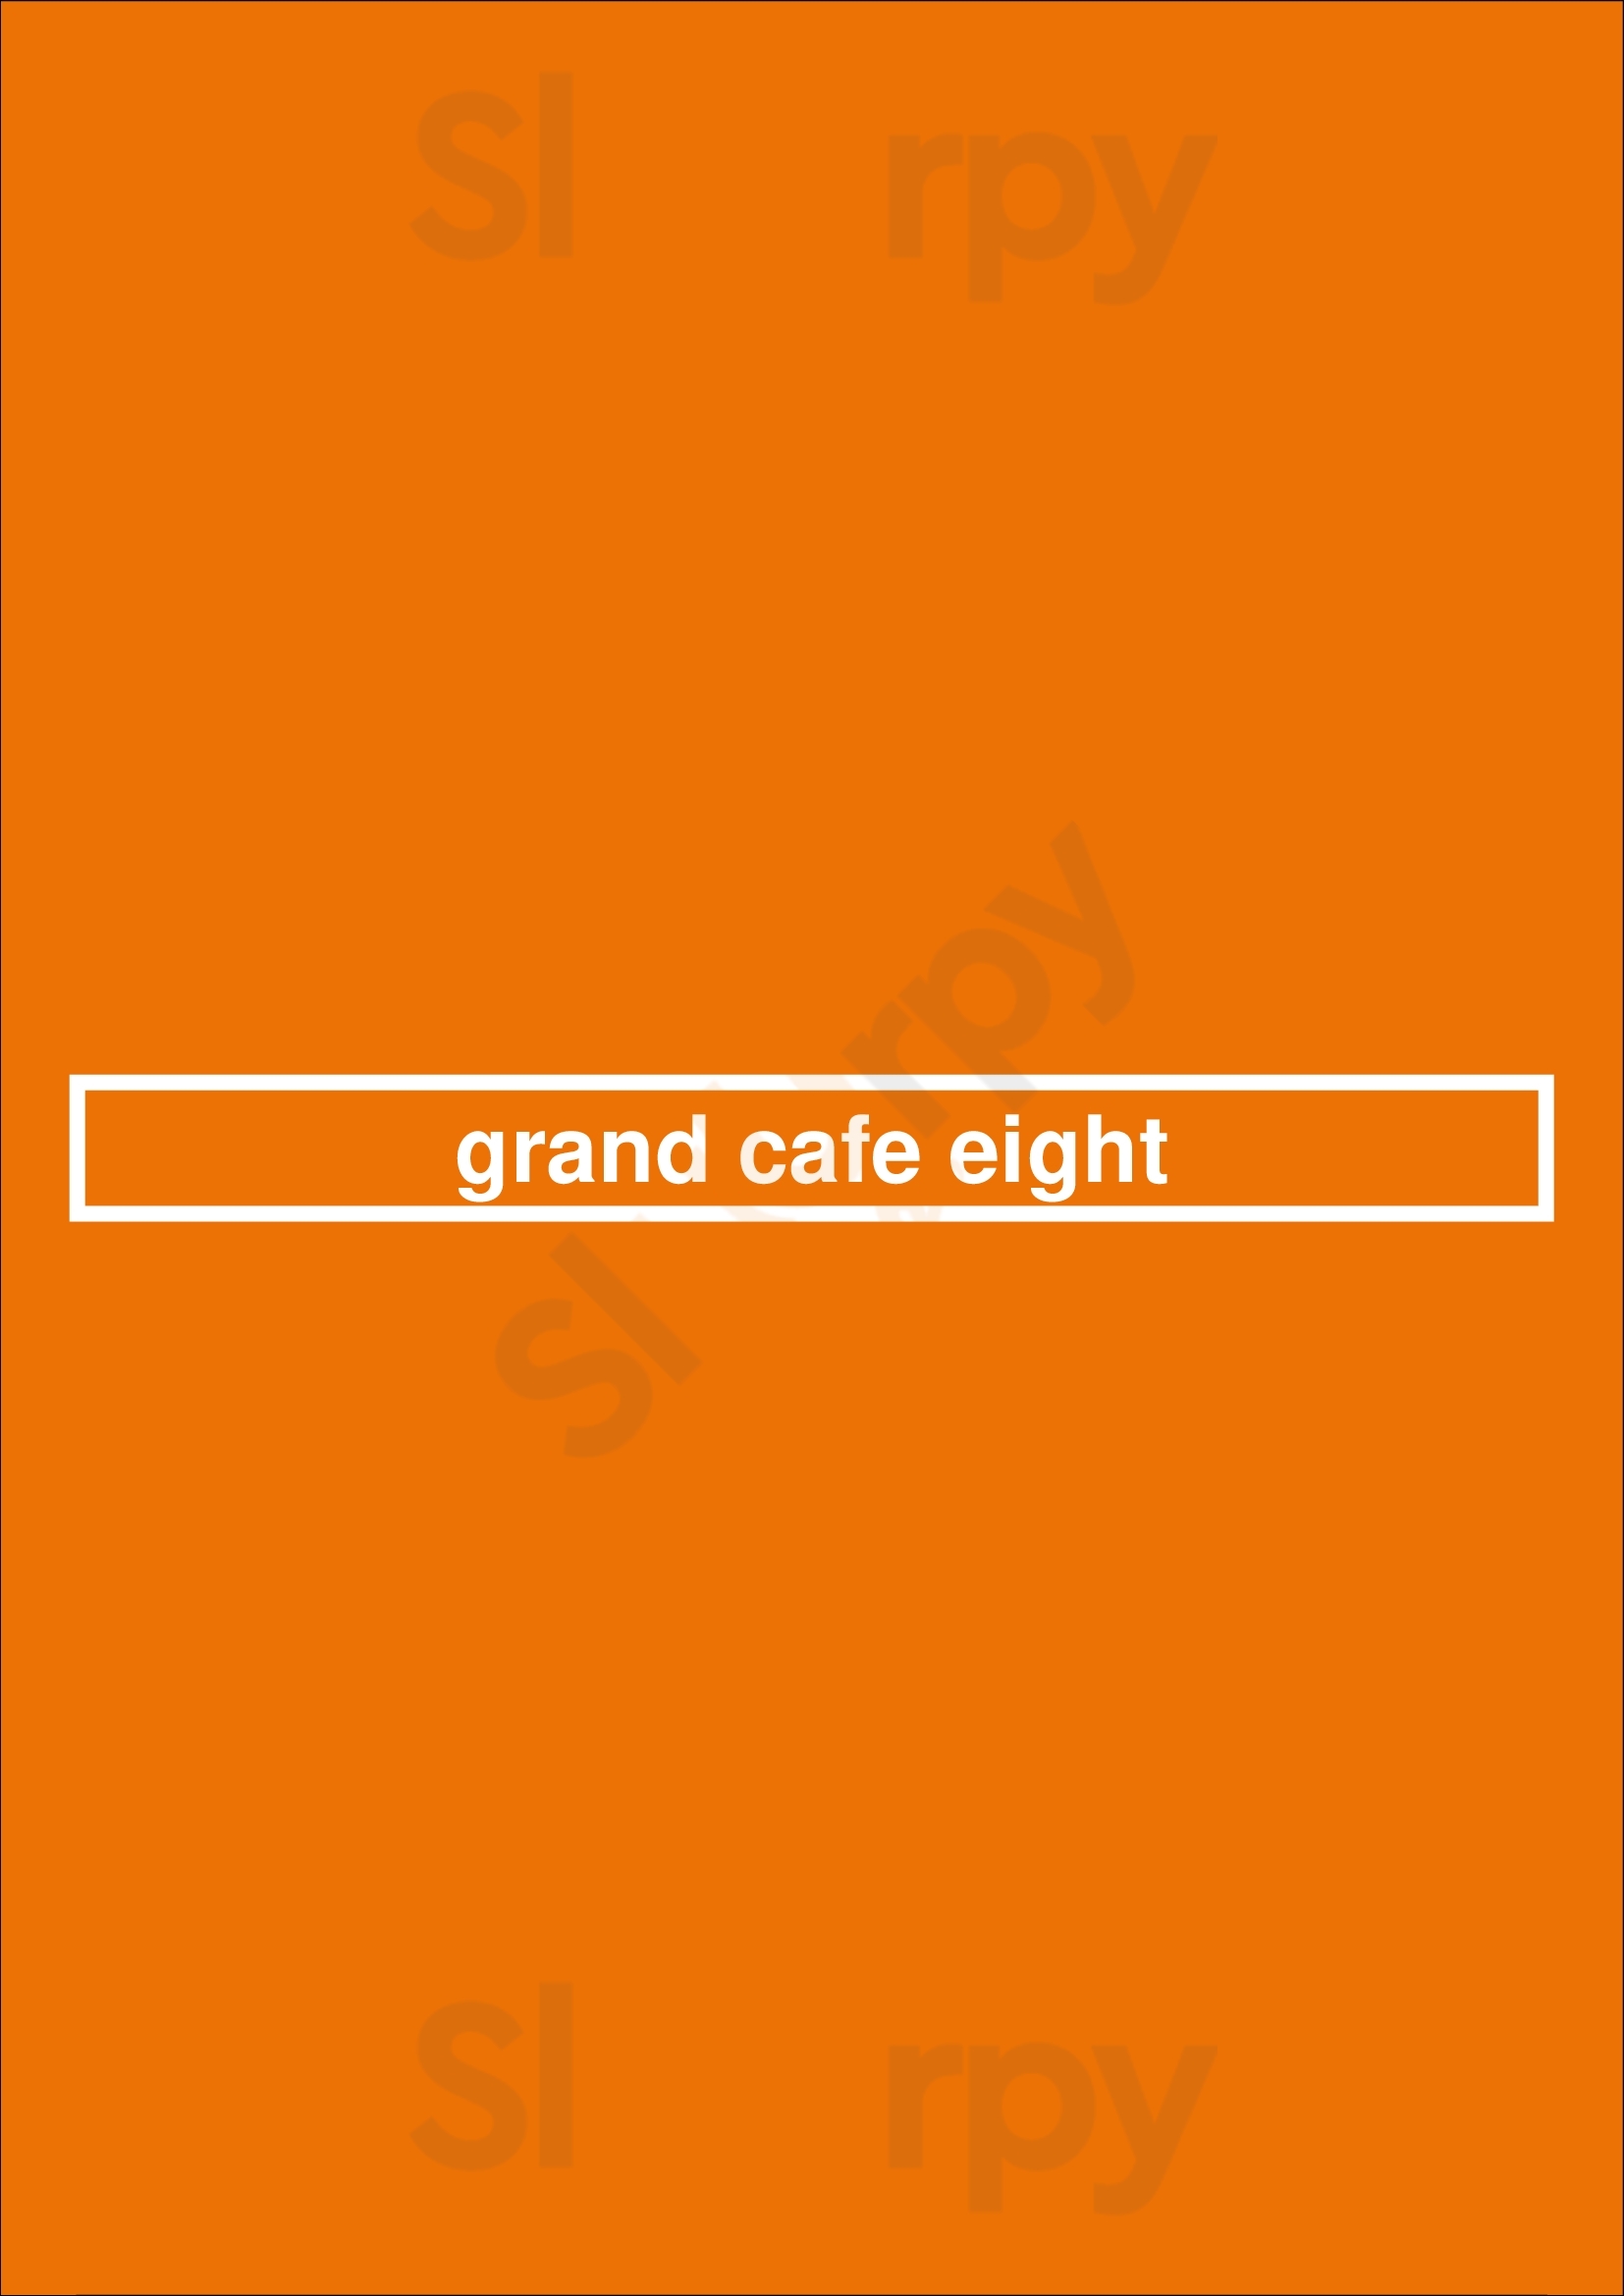 Grand Cafe Eight Alphen aan den Rijn Menu - 1